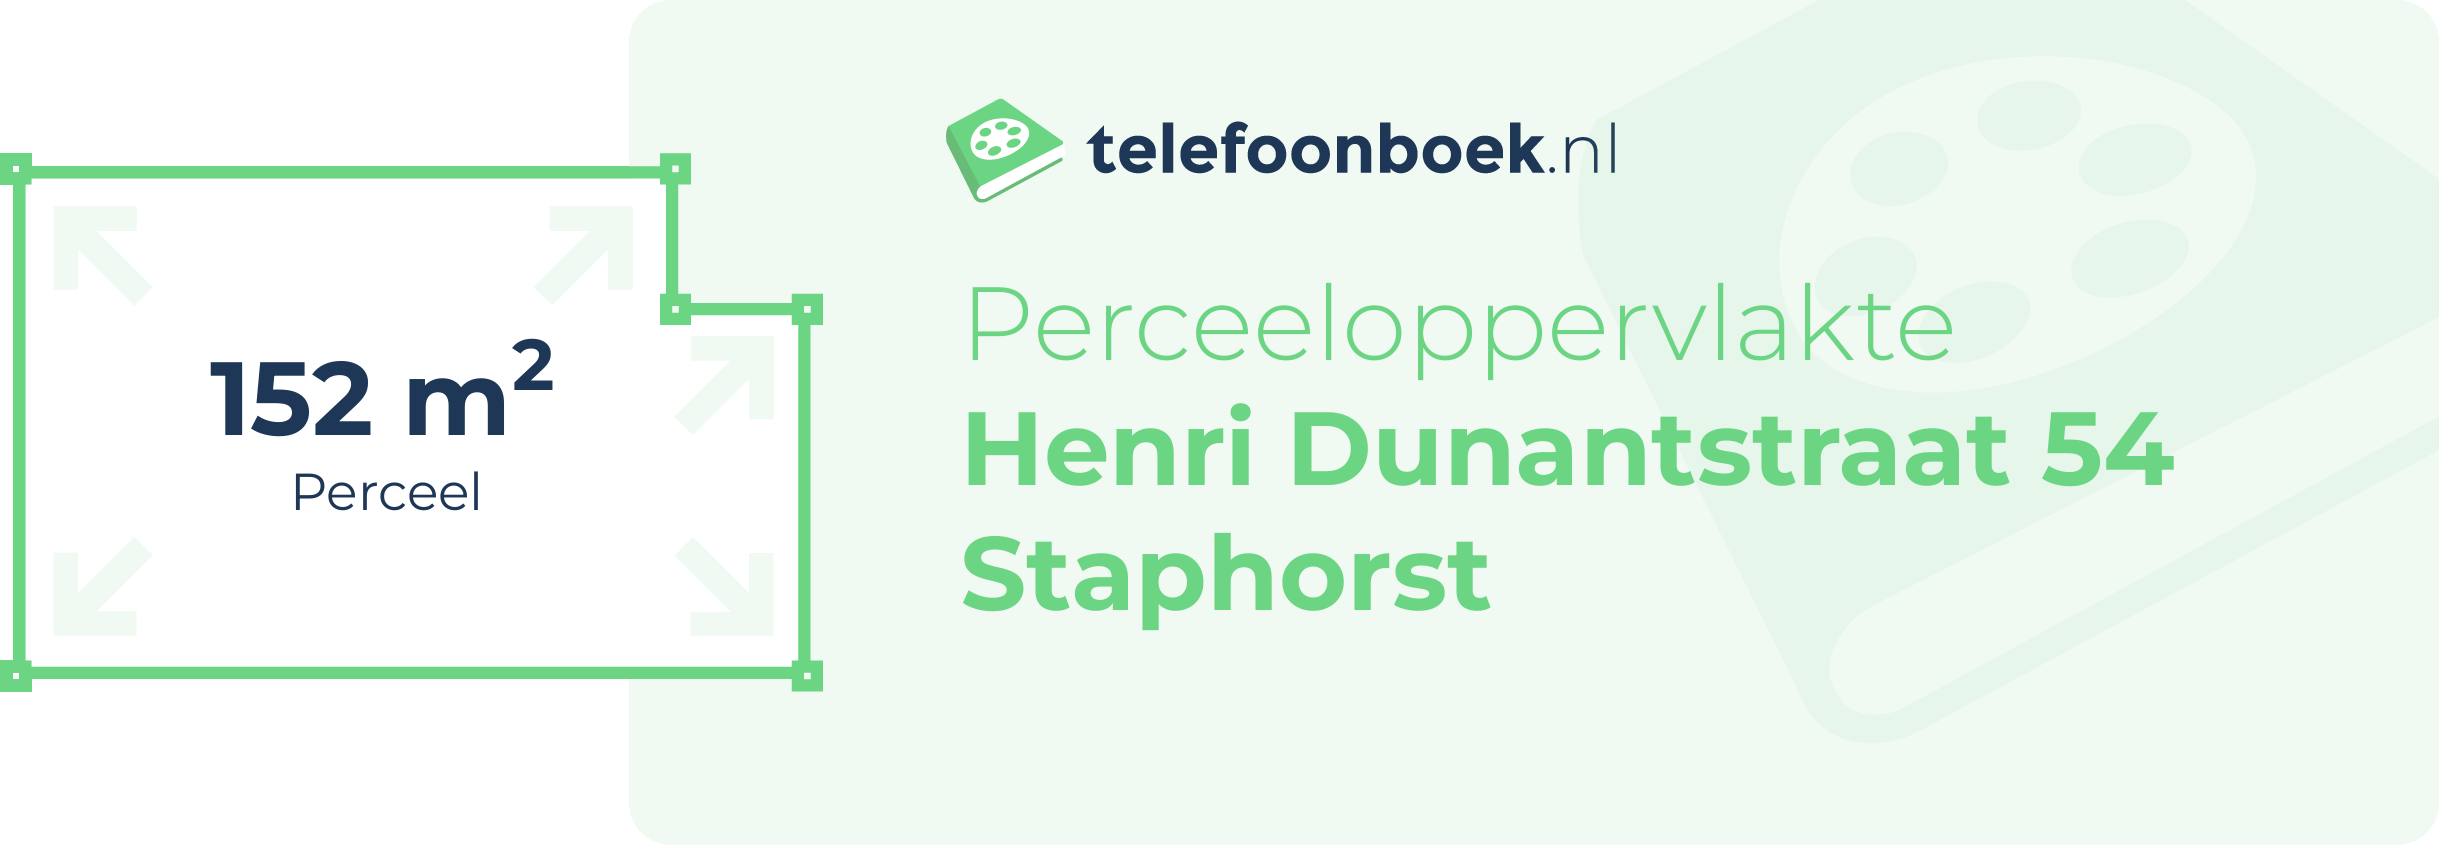 Perceeloppervlakte Henri Dunantstraat 54 Staphorst